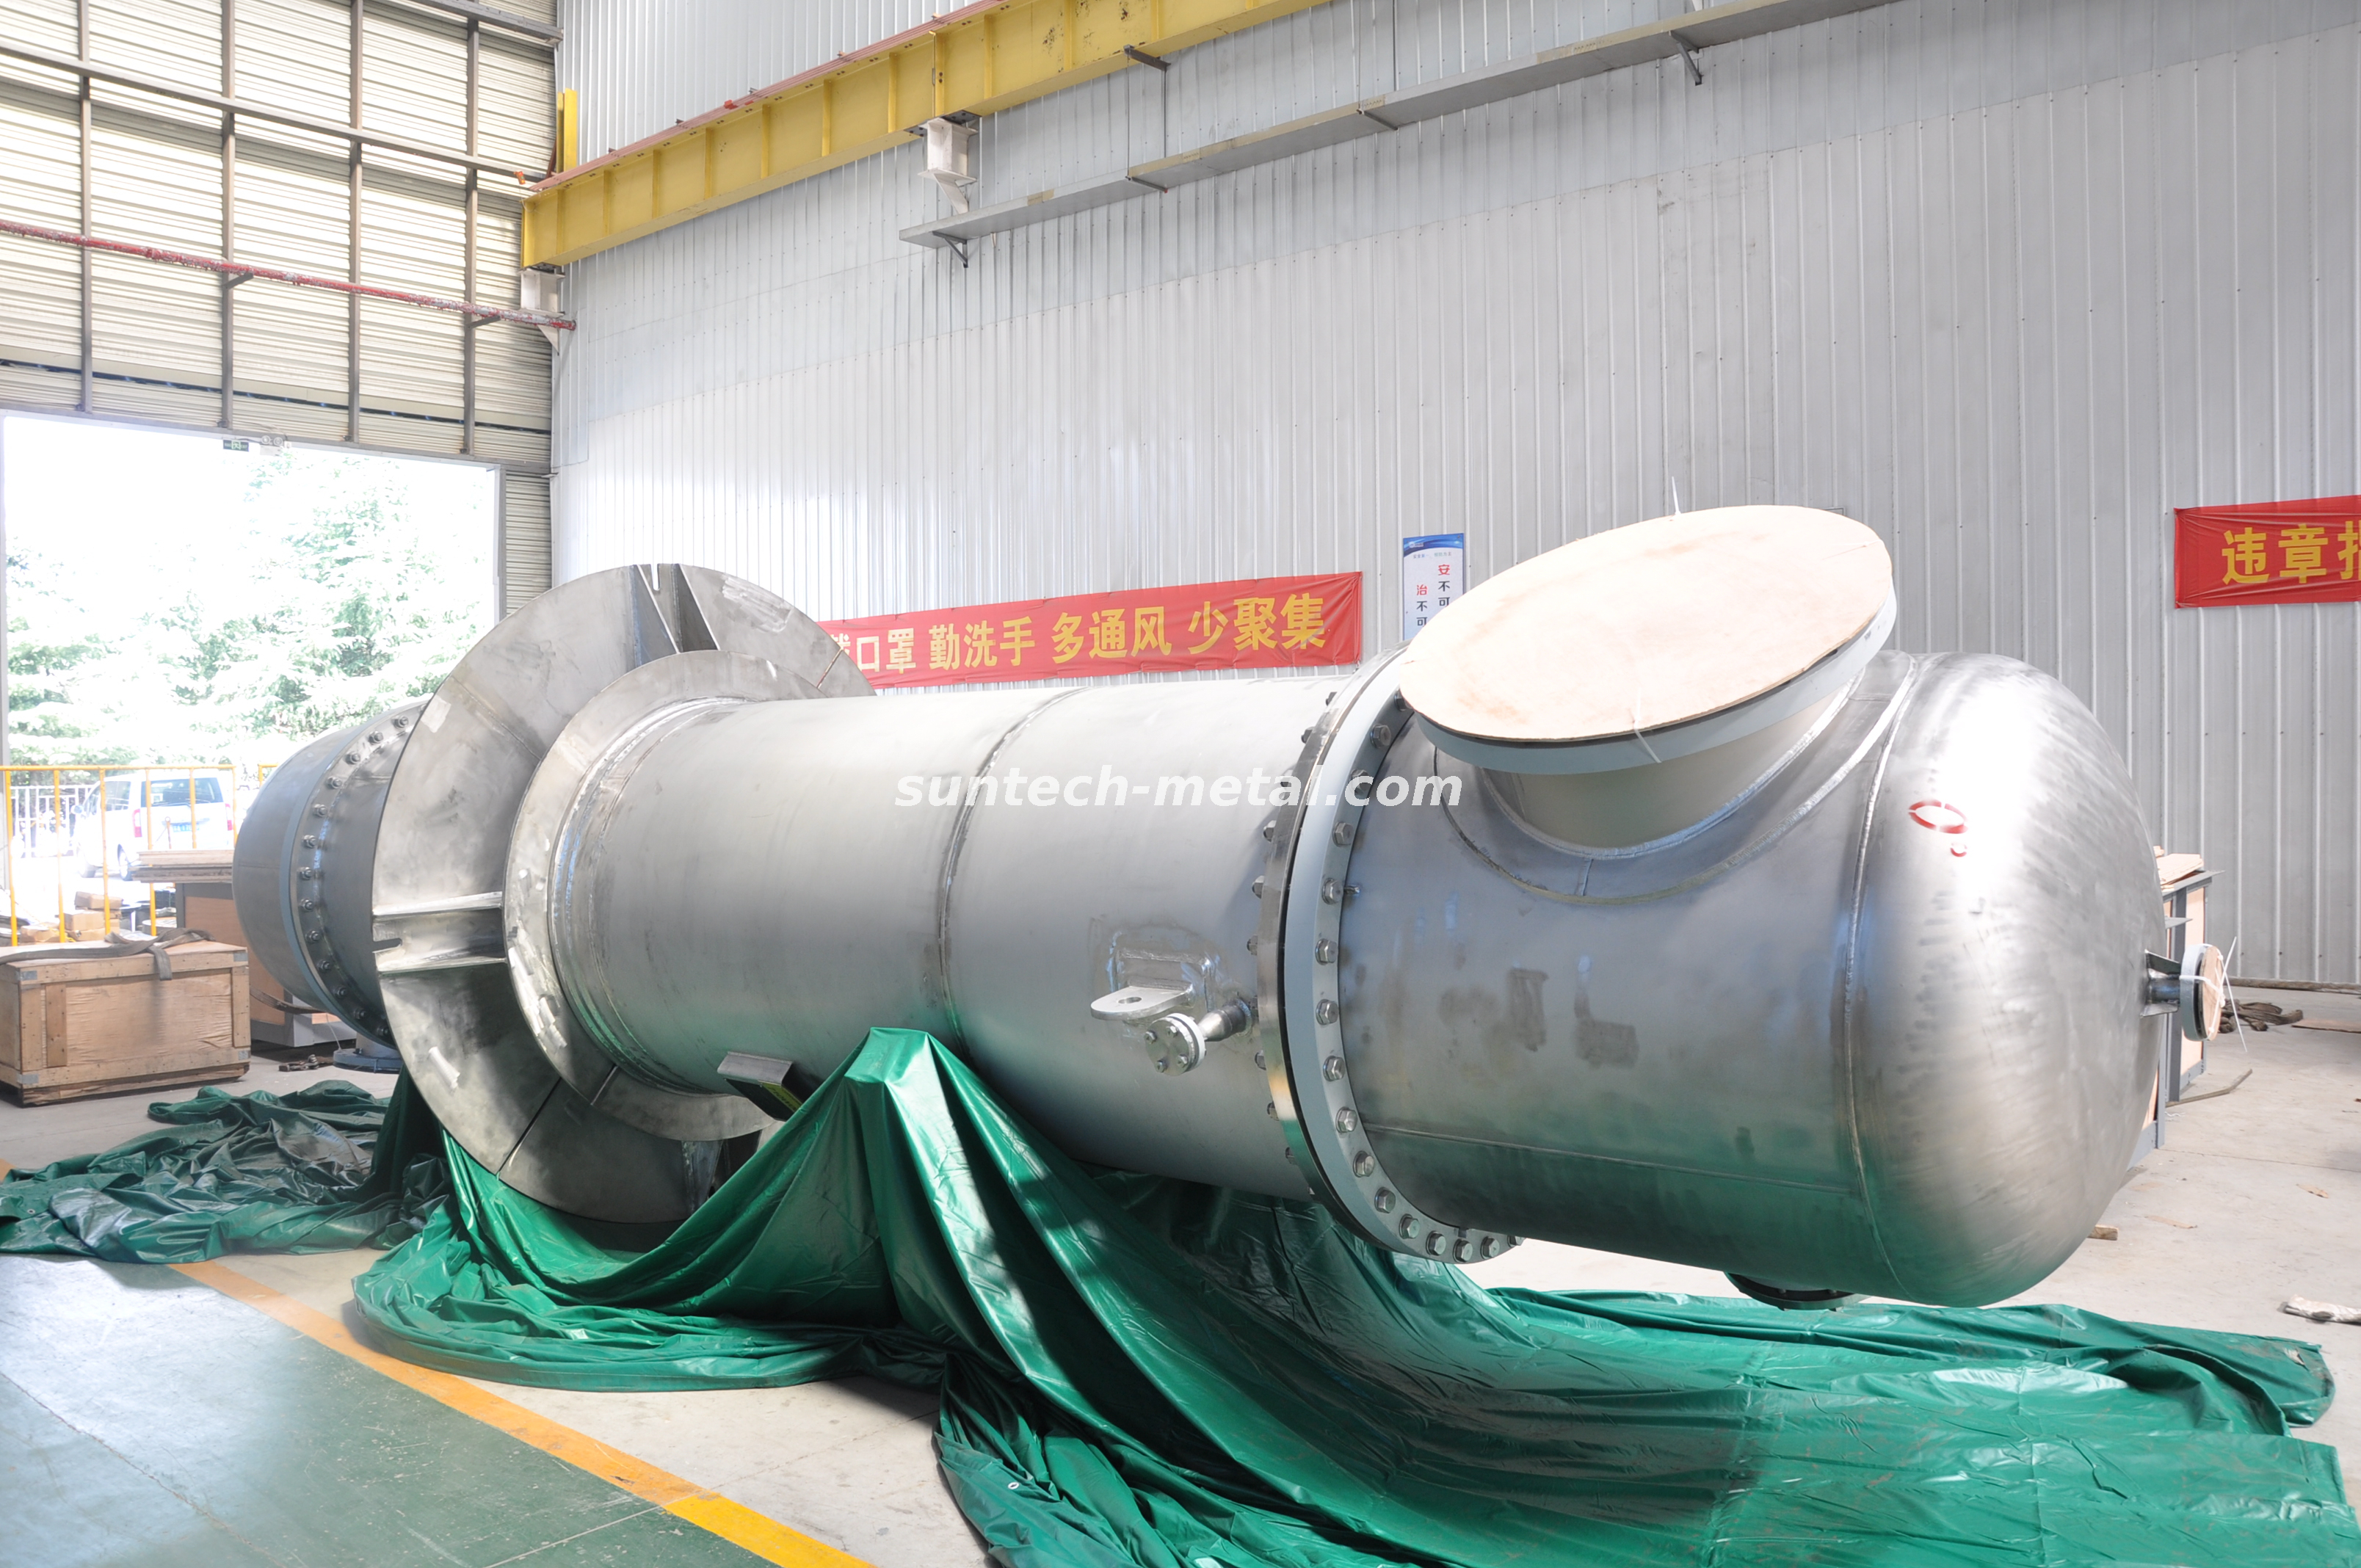 Helium ASME Titanium Pressure Vessel Seawater Desalination